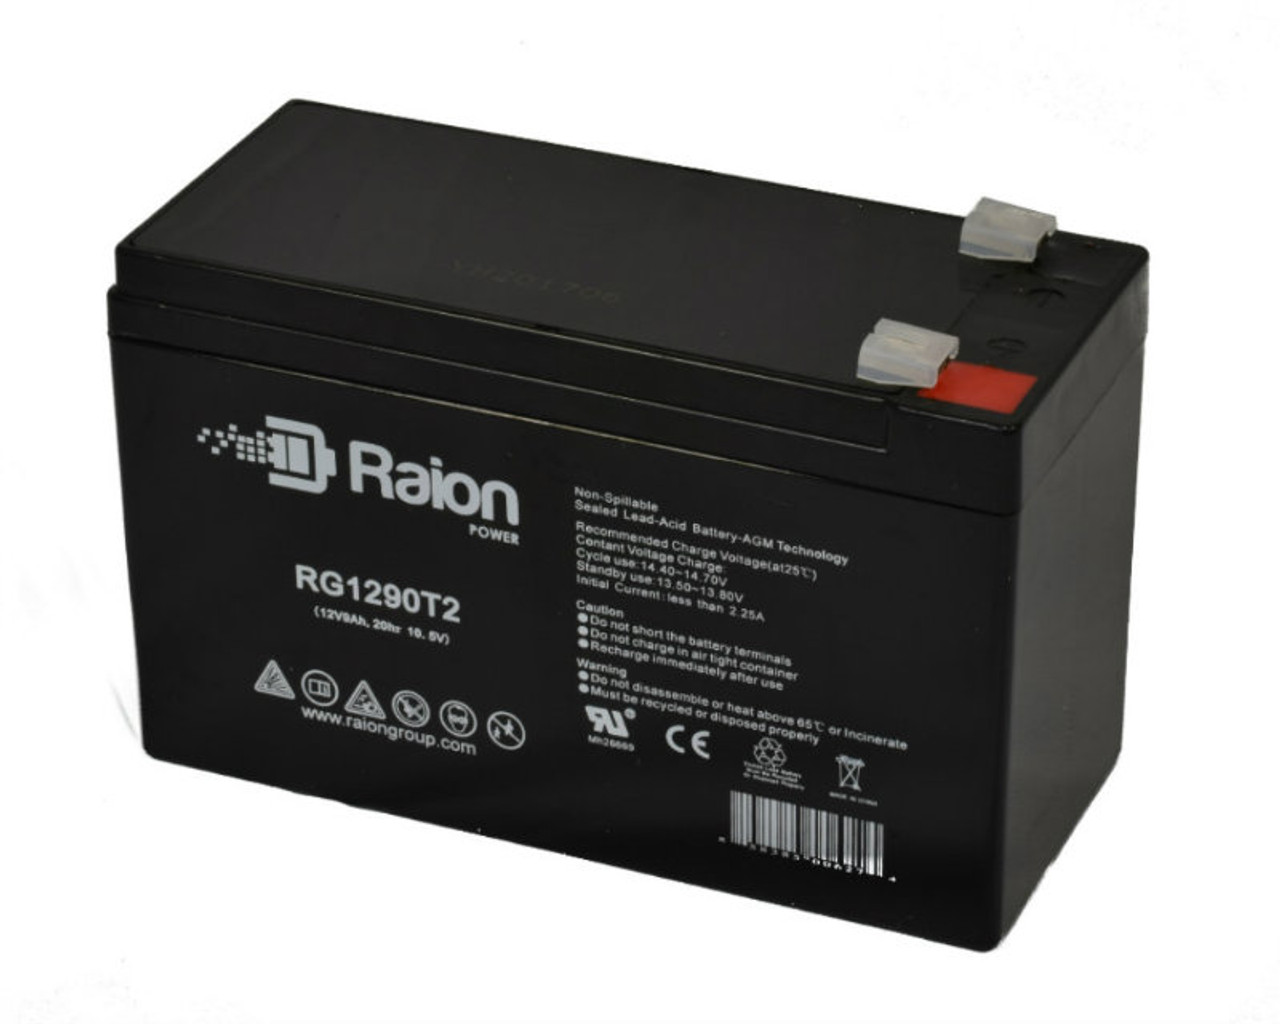 Raion Power RG1290T2 12V 9Ah AGM Battery for DataLex NP9-12